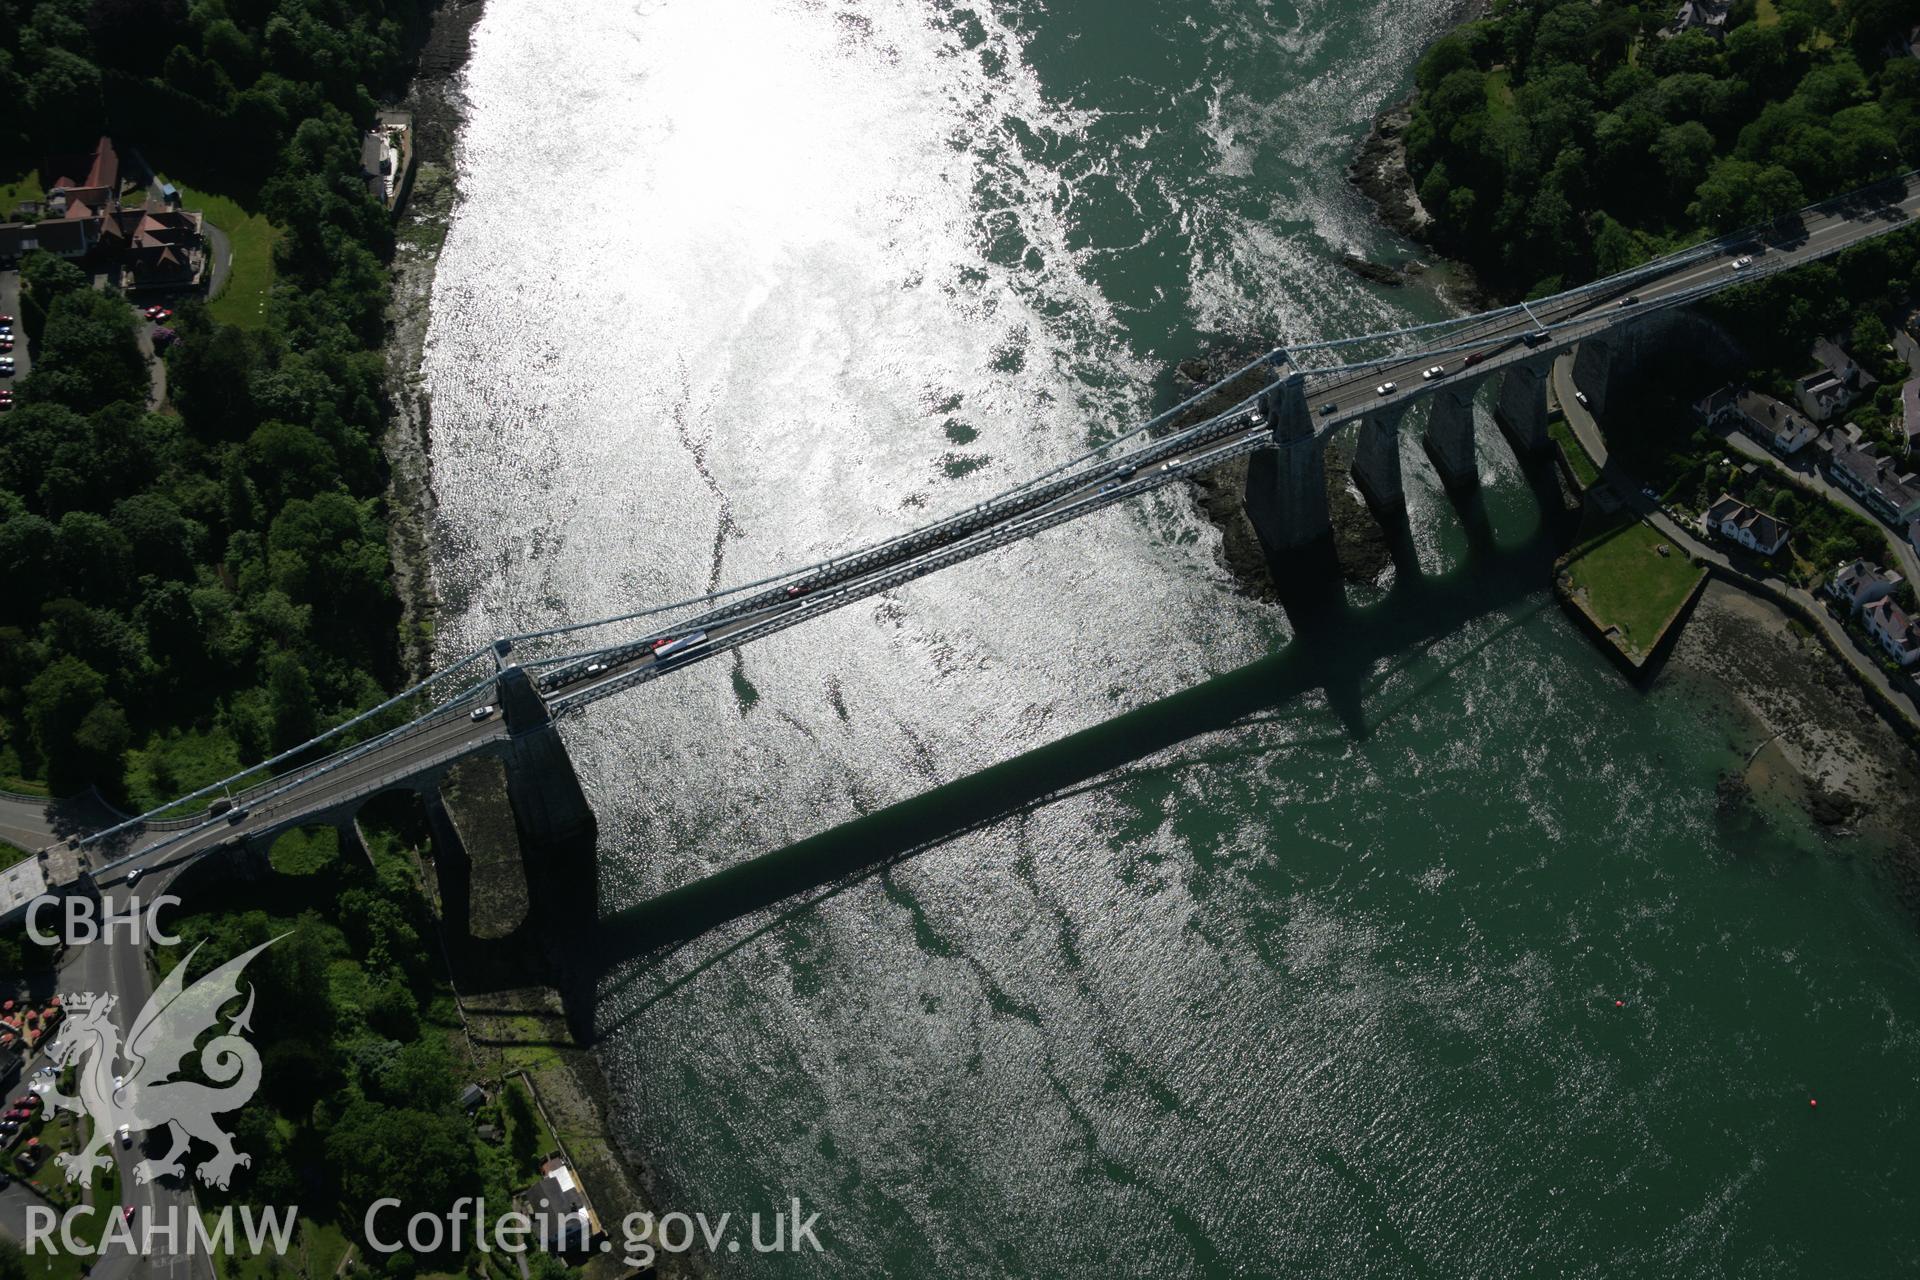 RCAHMW colour oblique aerial photograph of Menai Suspension Bridge. Taken on 14 June 2006 by Toby Driver.